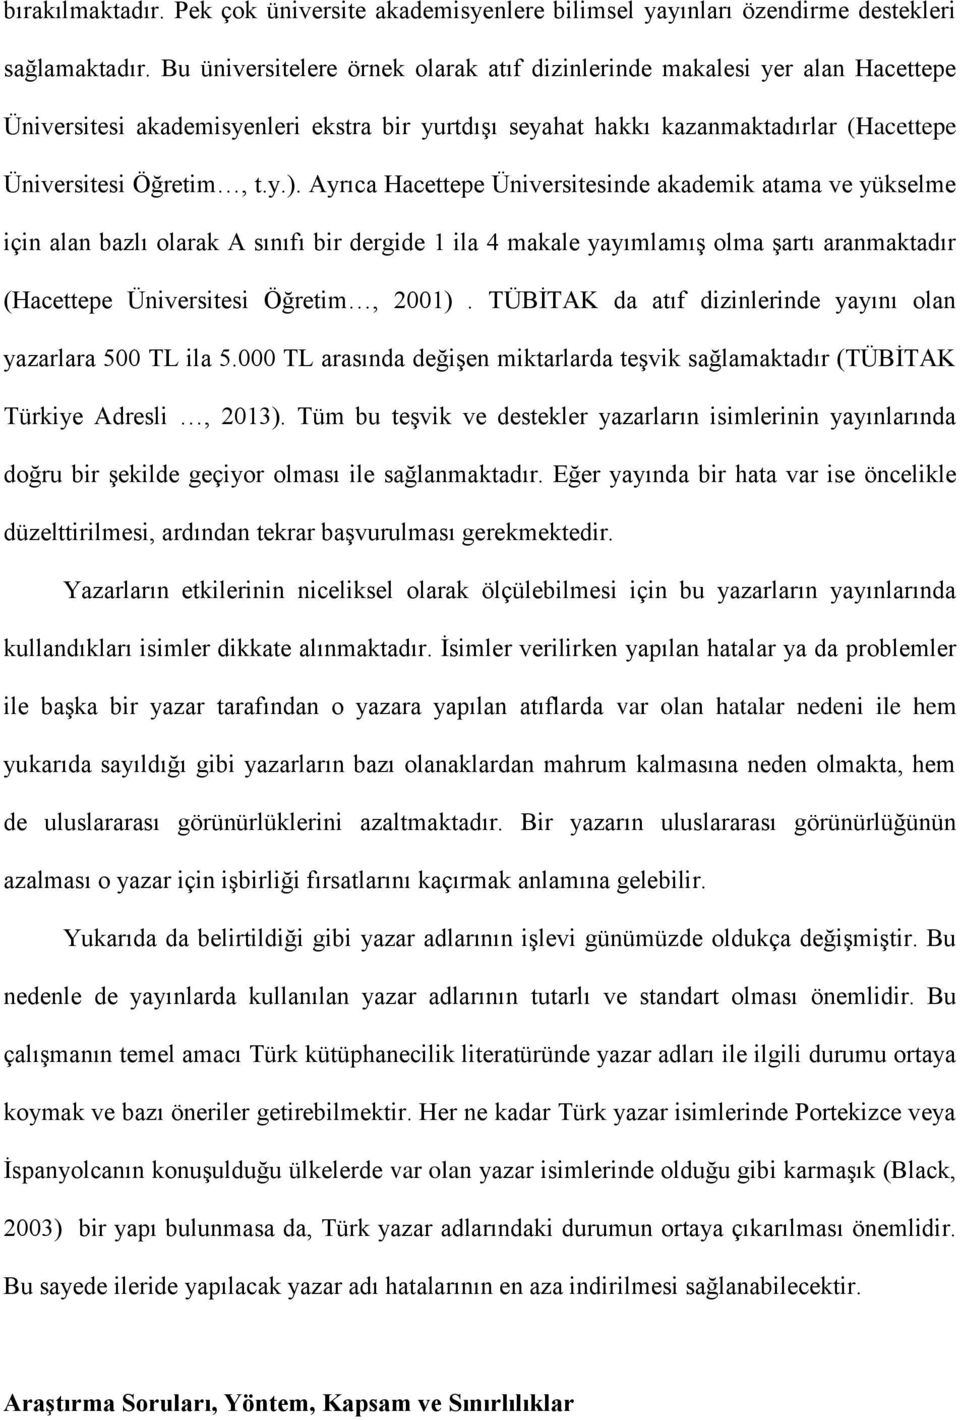 Ayrıca Hacettepe Üniversitesinde akademik atama ve yükselme için alan bazlı olarak A sınıfı bir dergide 1 ila 4 makale yayımlamış olma şartı aranmaktadır (Hacettepe Üniversitesi Öğretim, 2001).